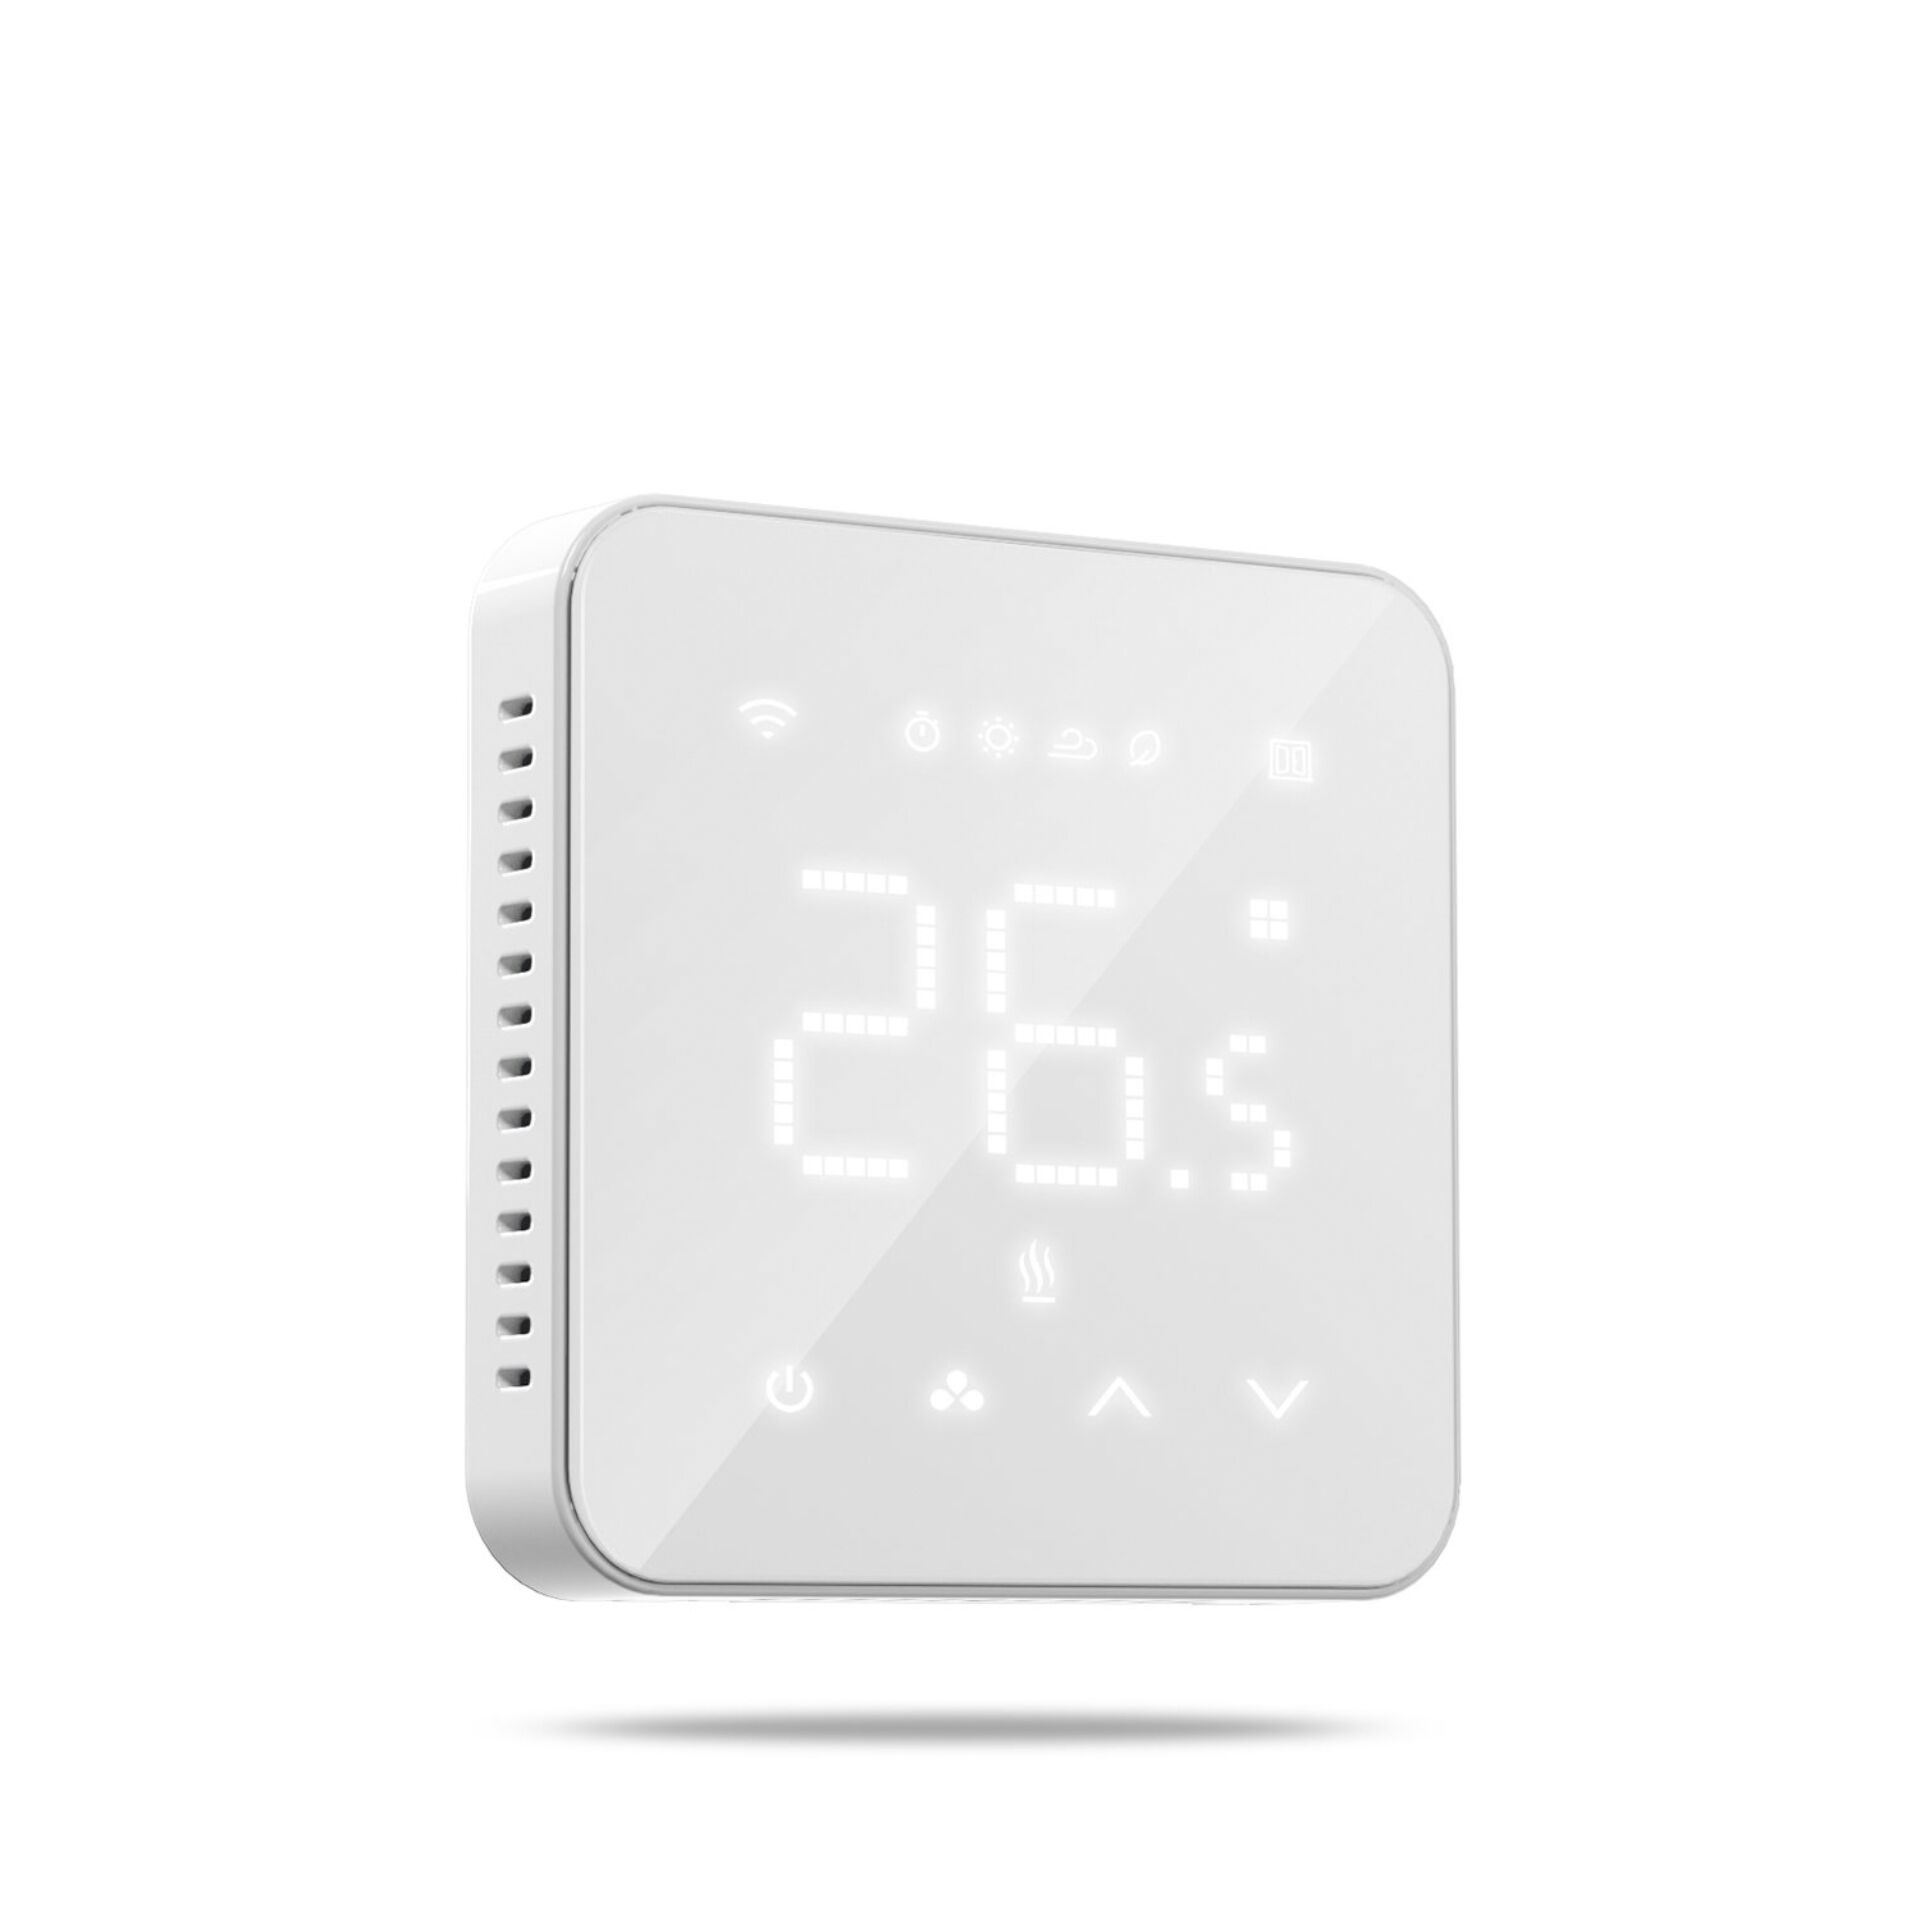 Meross MTS200 Smart WiFi Thermostat, Funk-Raumthermostat